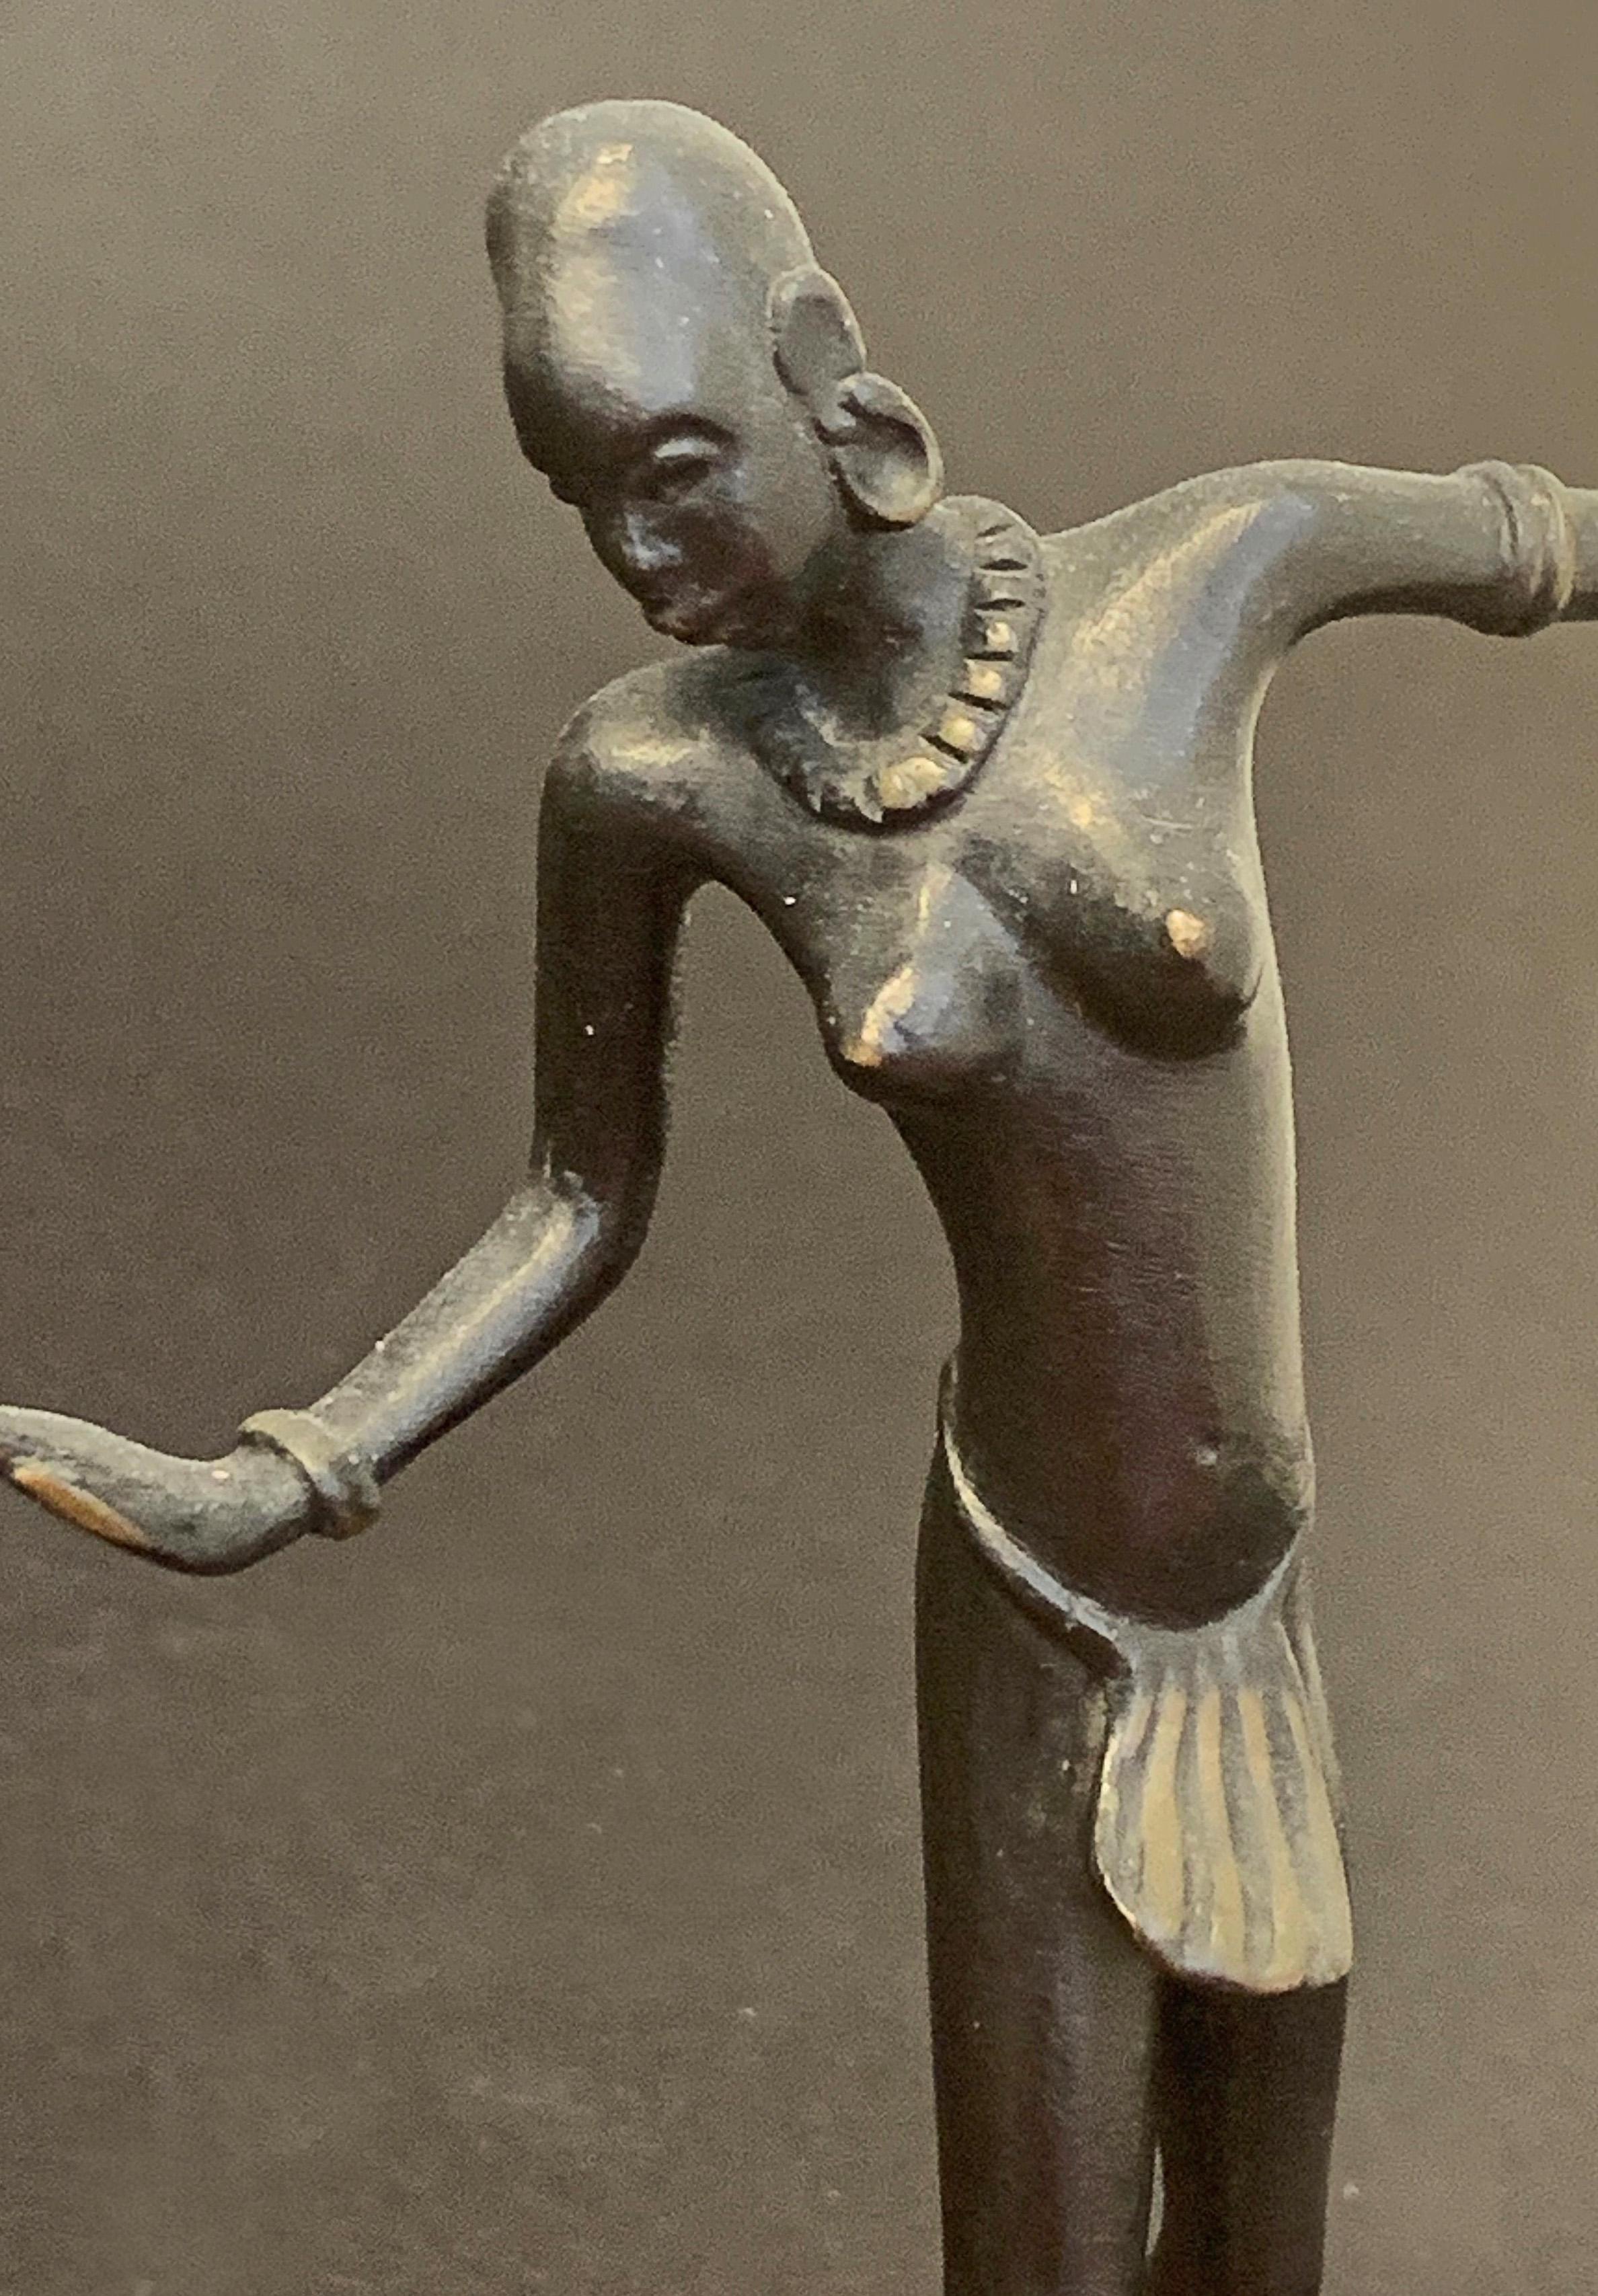 Cette petite représentation d'un nu féminin dansant a été sculptée par Richard Rohac. Elle témoigne clairement de l'intérêt que les Européens portent depuis des décennies à l'art et à la culture de l'Afrique, à commencer par le cubisme, qui a